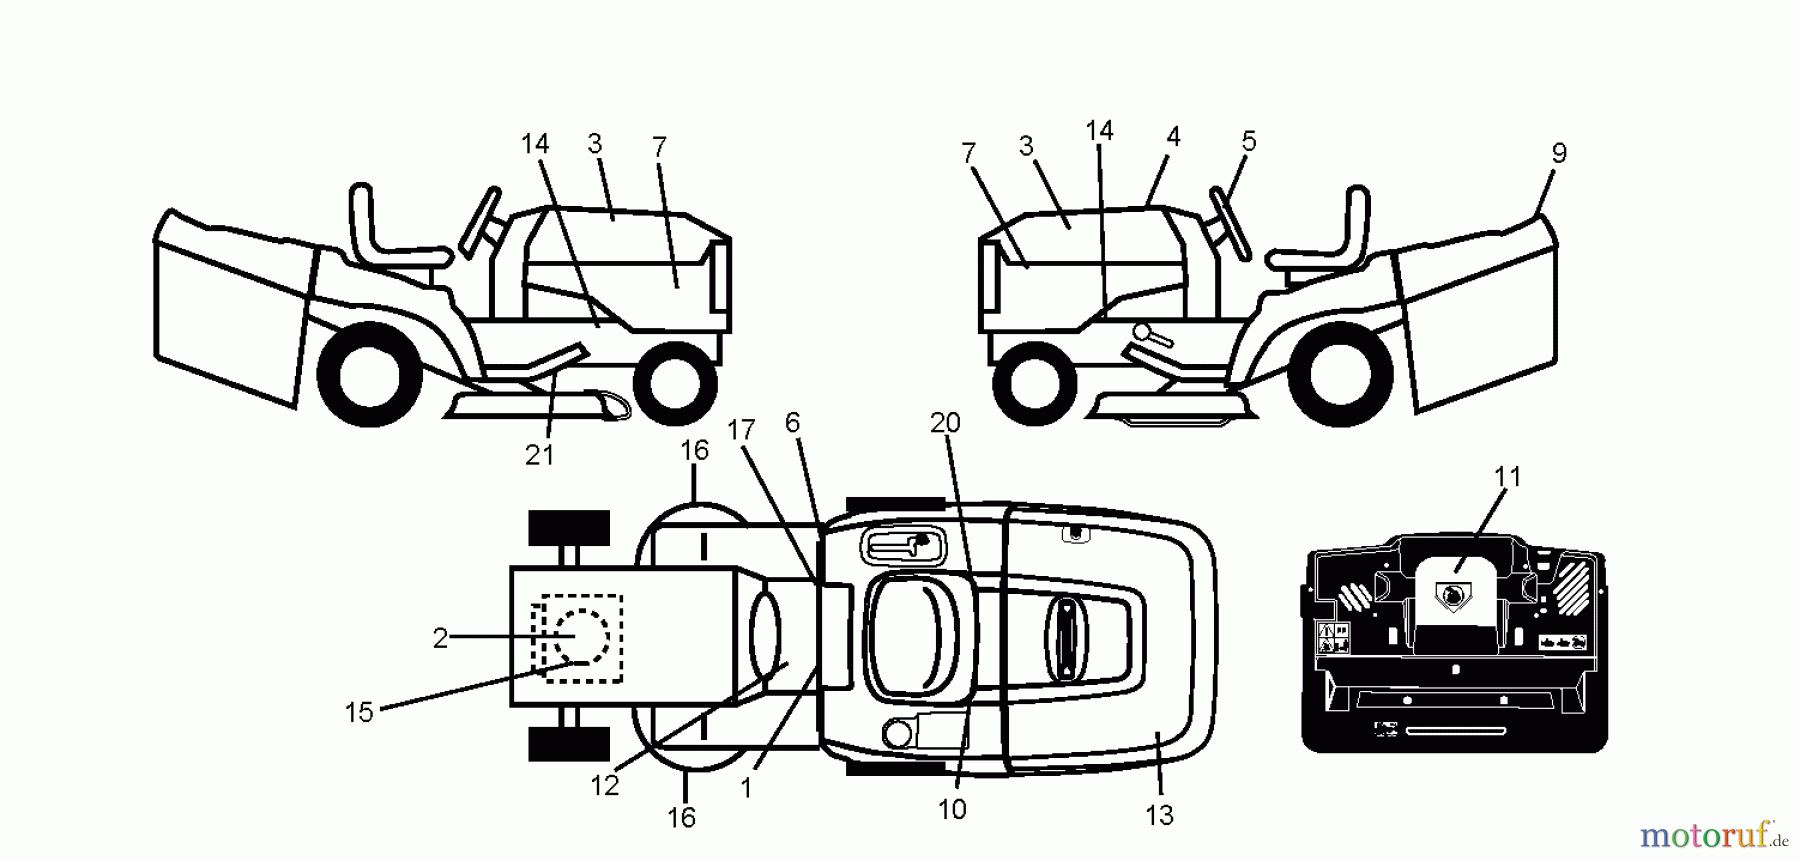  Jonsered Rasen  und Garten Traktoren LT2217 CMA (96061023800) - Jonsered Lawn & Garden Tractor (2008-10) DECALS